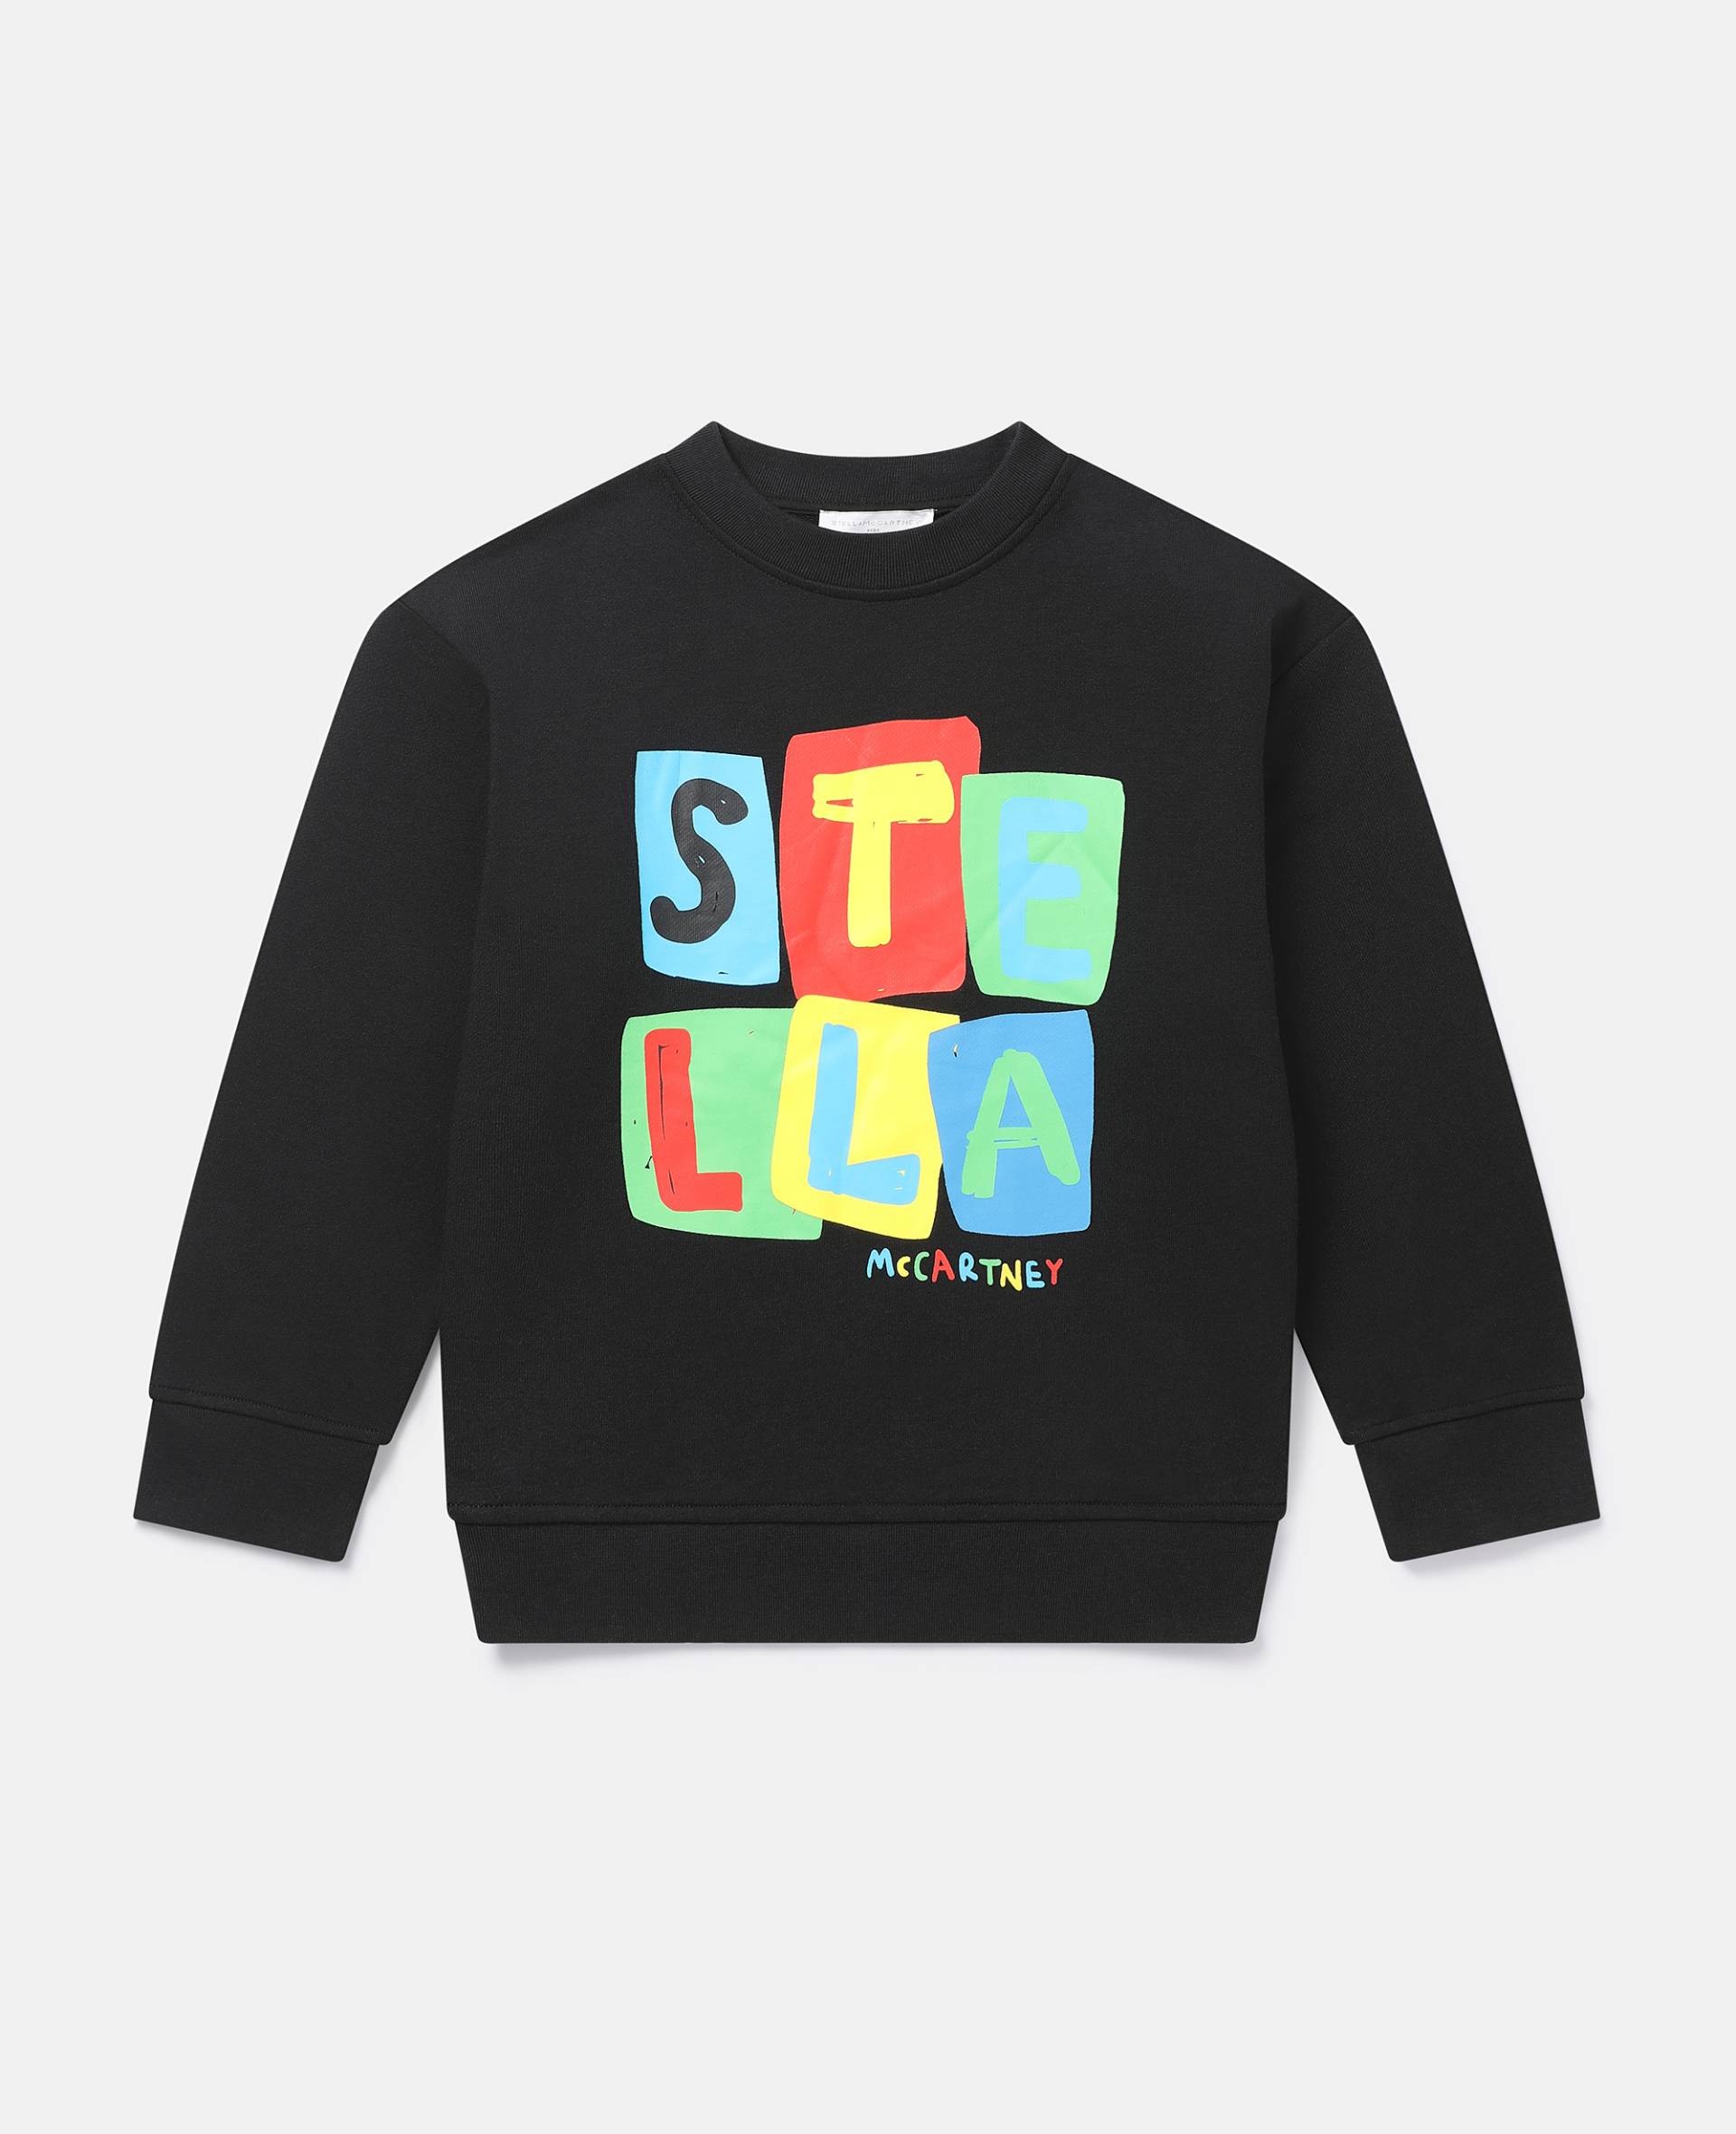 Stella McCartney - Sweatshirt mit Buchstabenblocks als Print, Frau, Schwarz, Größe: 4 von Stella McCartney